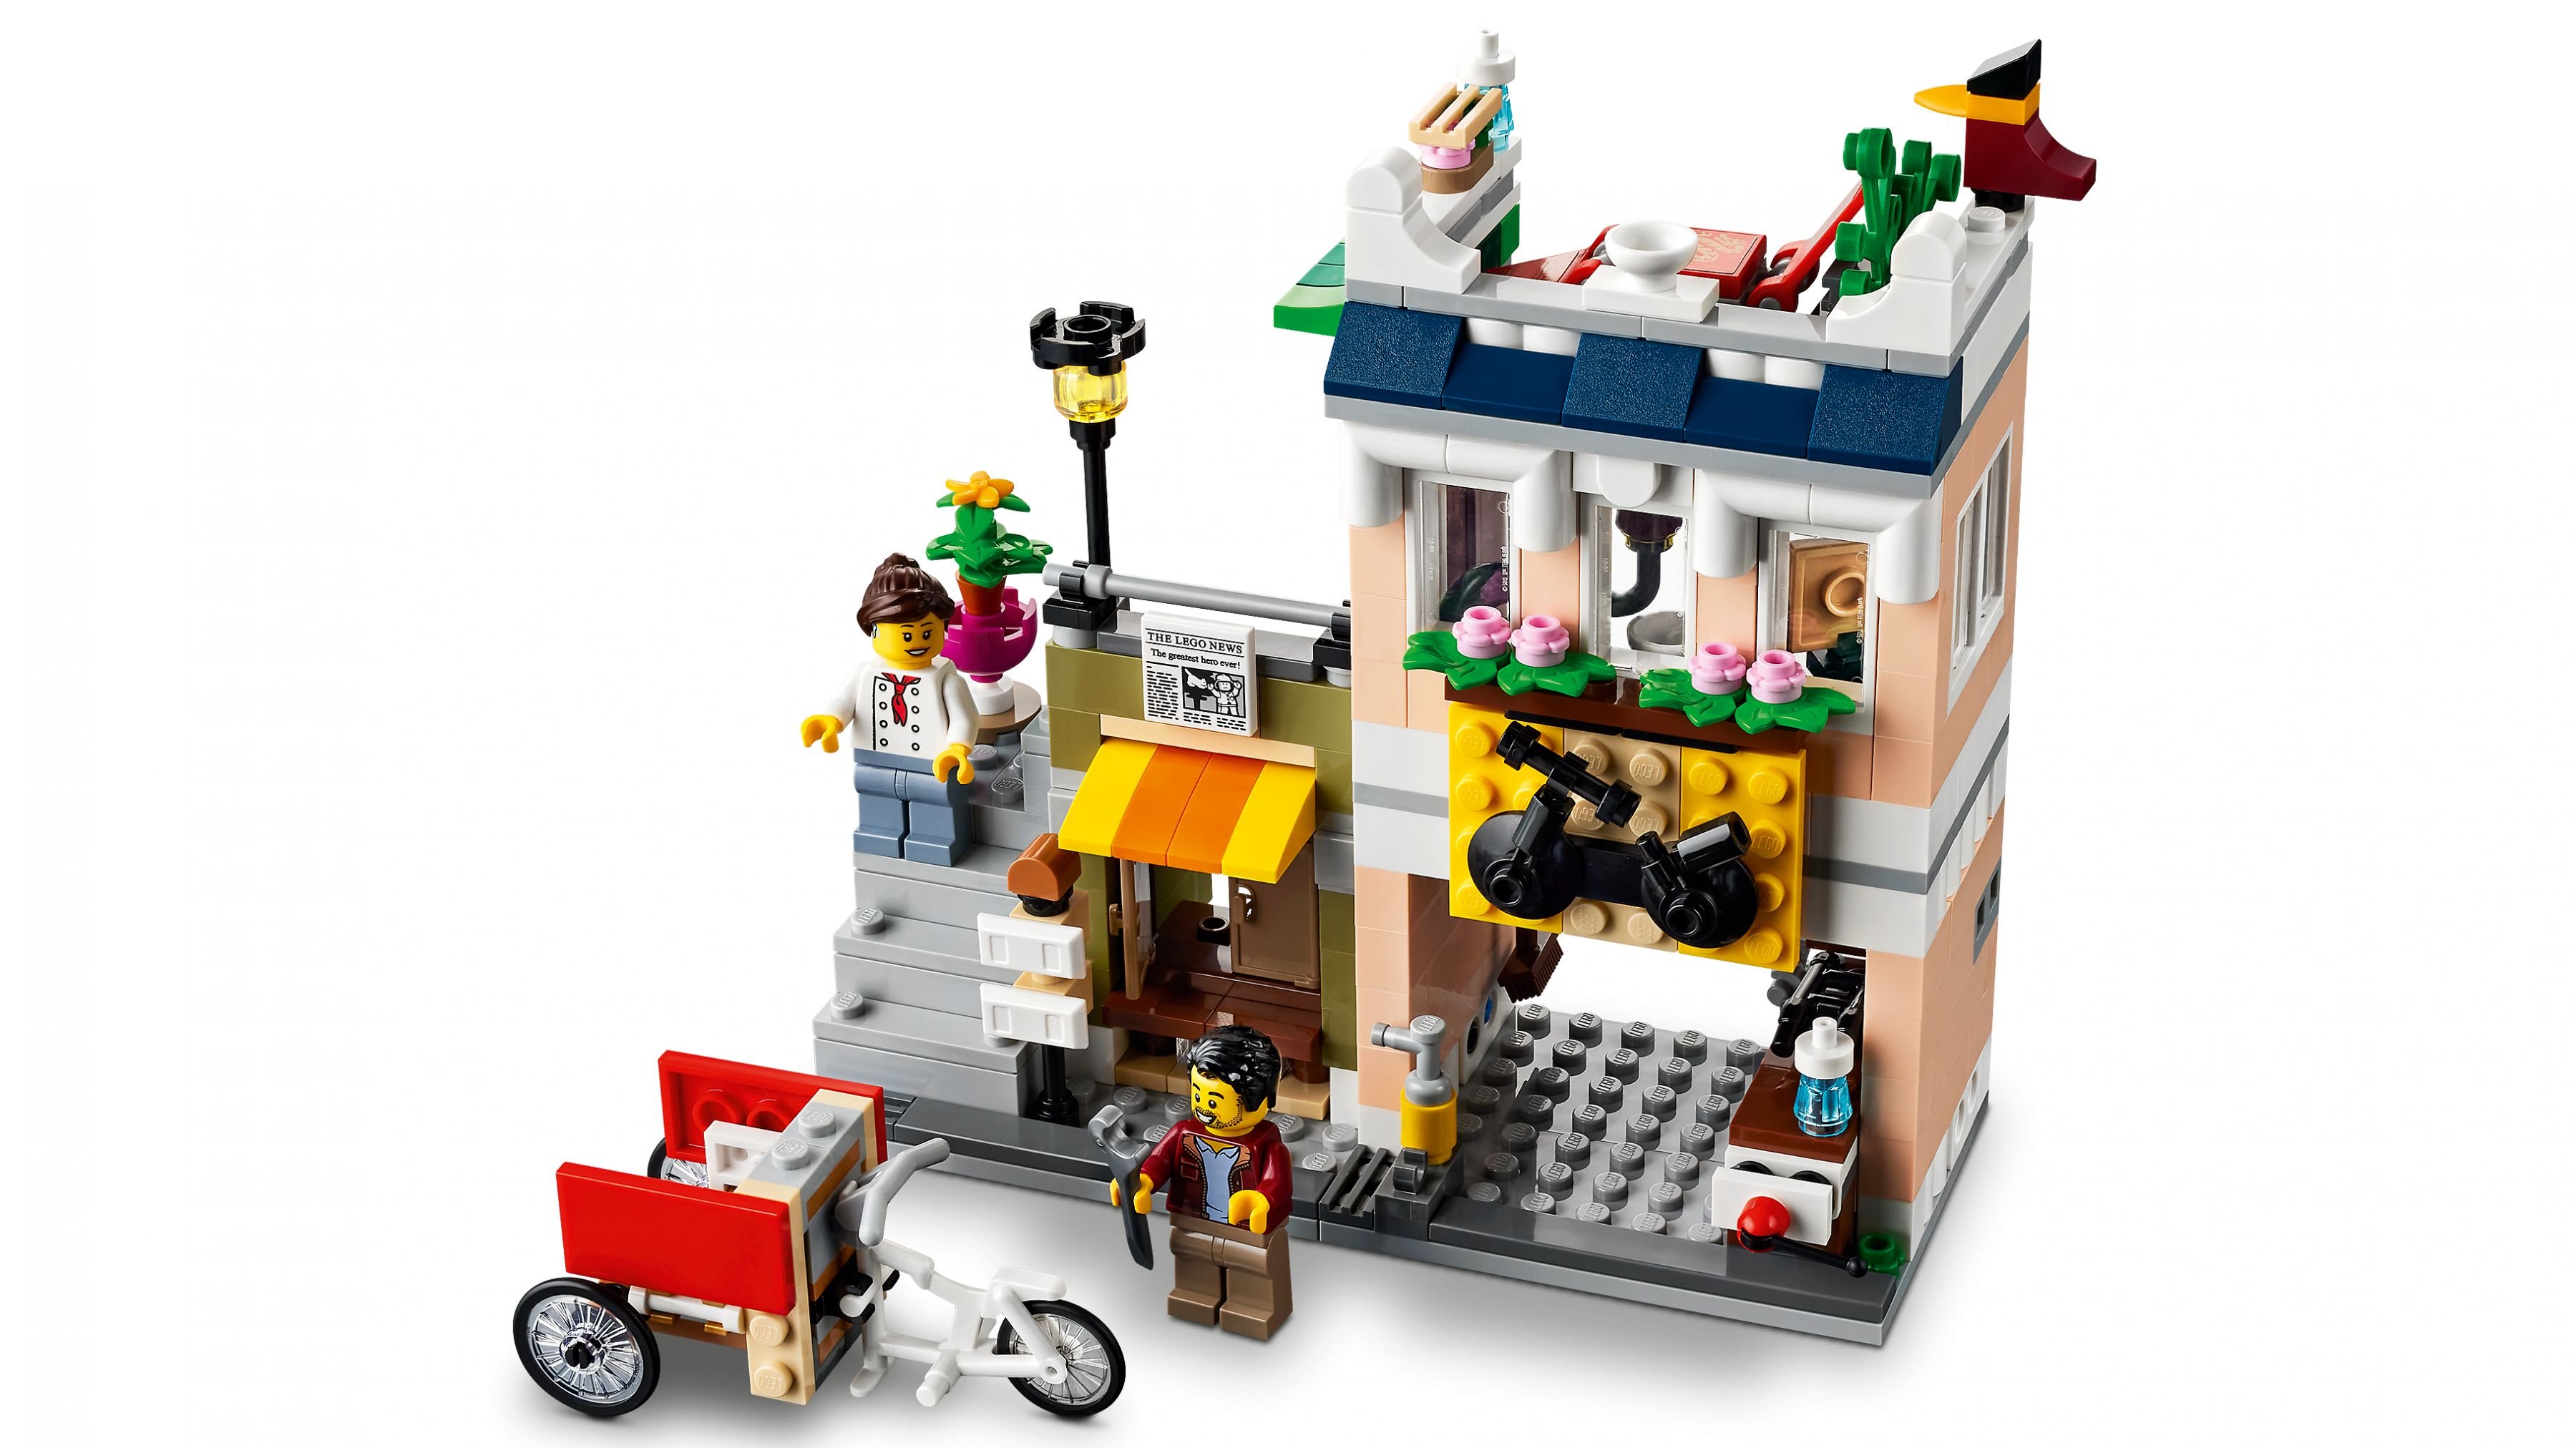 LEGO Creator 31131 Nudelladen LEGO_31131_WEB_SEC04_NOBG.jpg